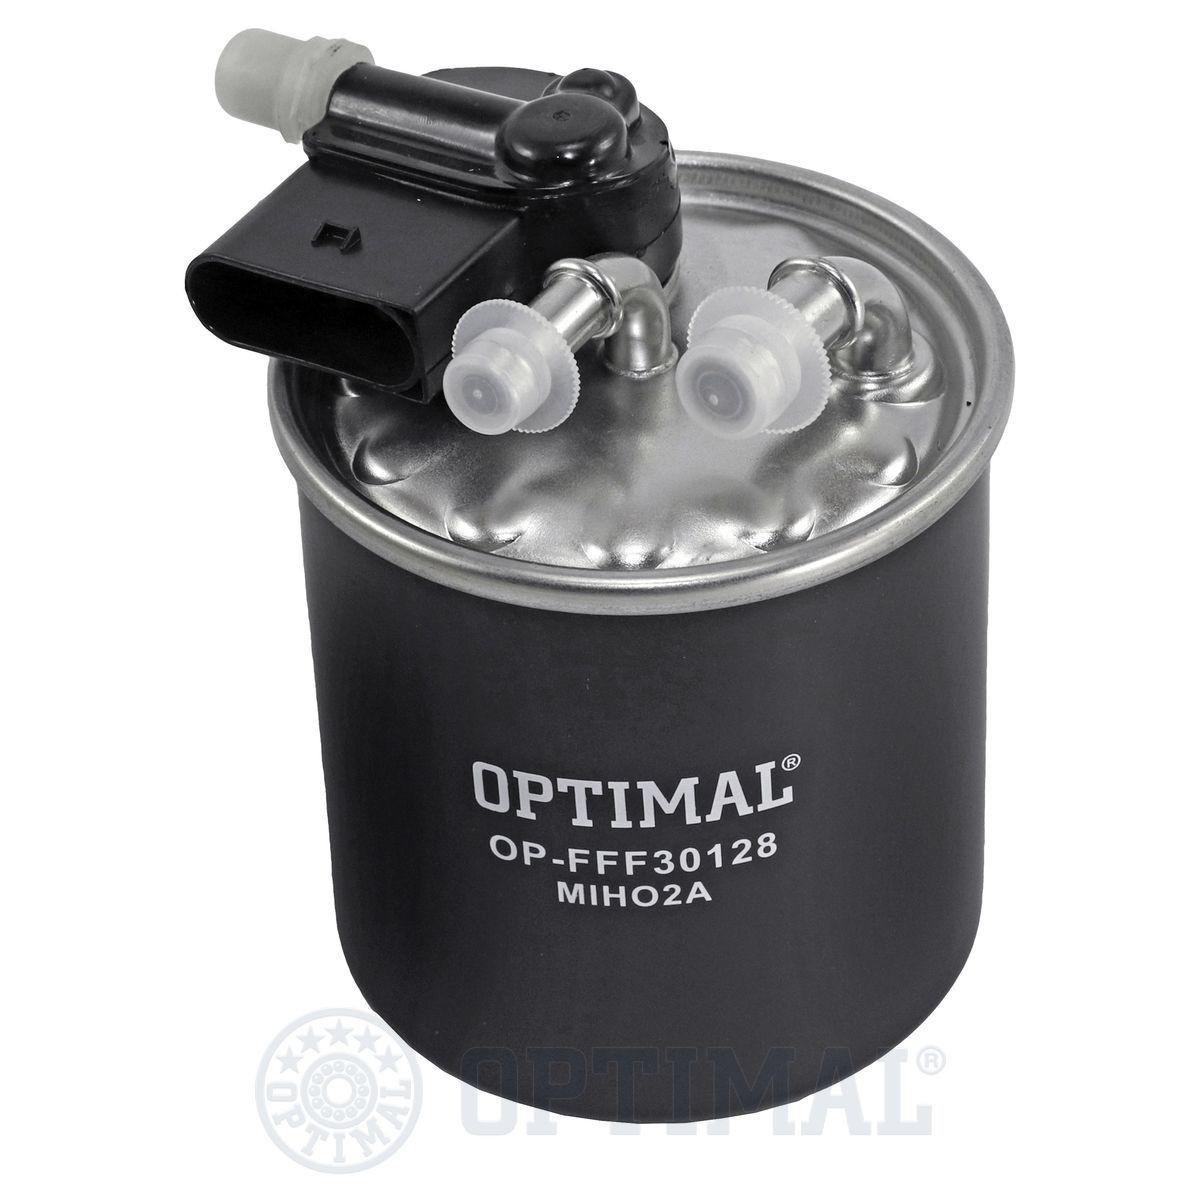 OPTIMAL OP-FFF30128 Fuel filter 607 090 13 52